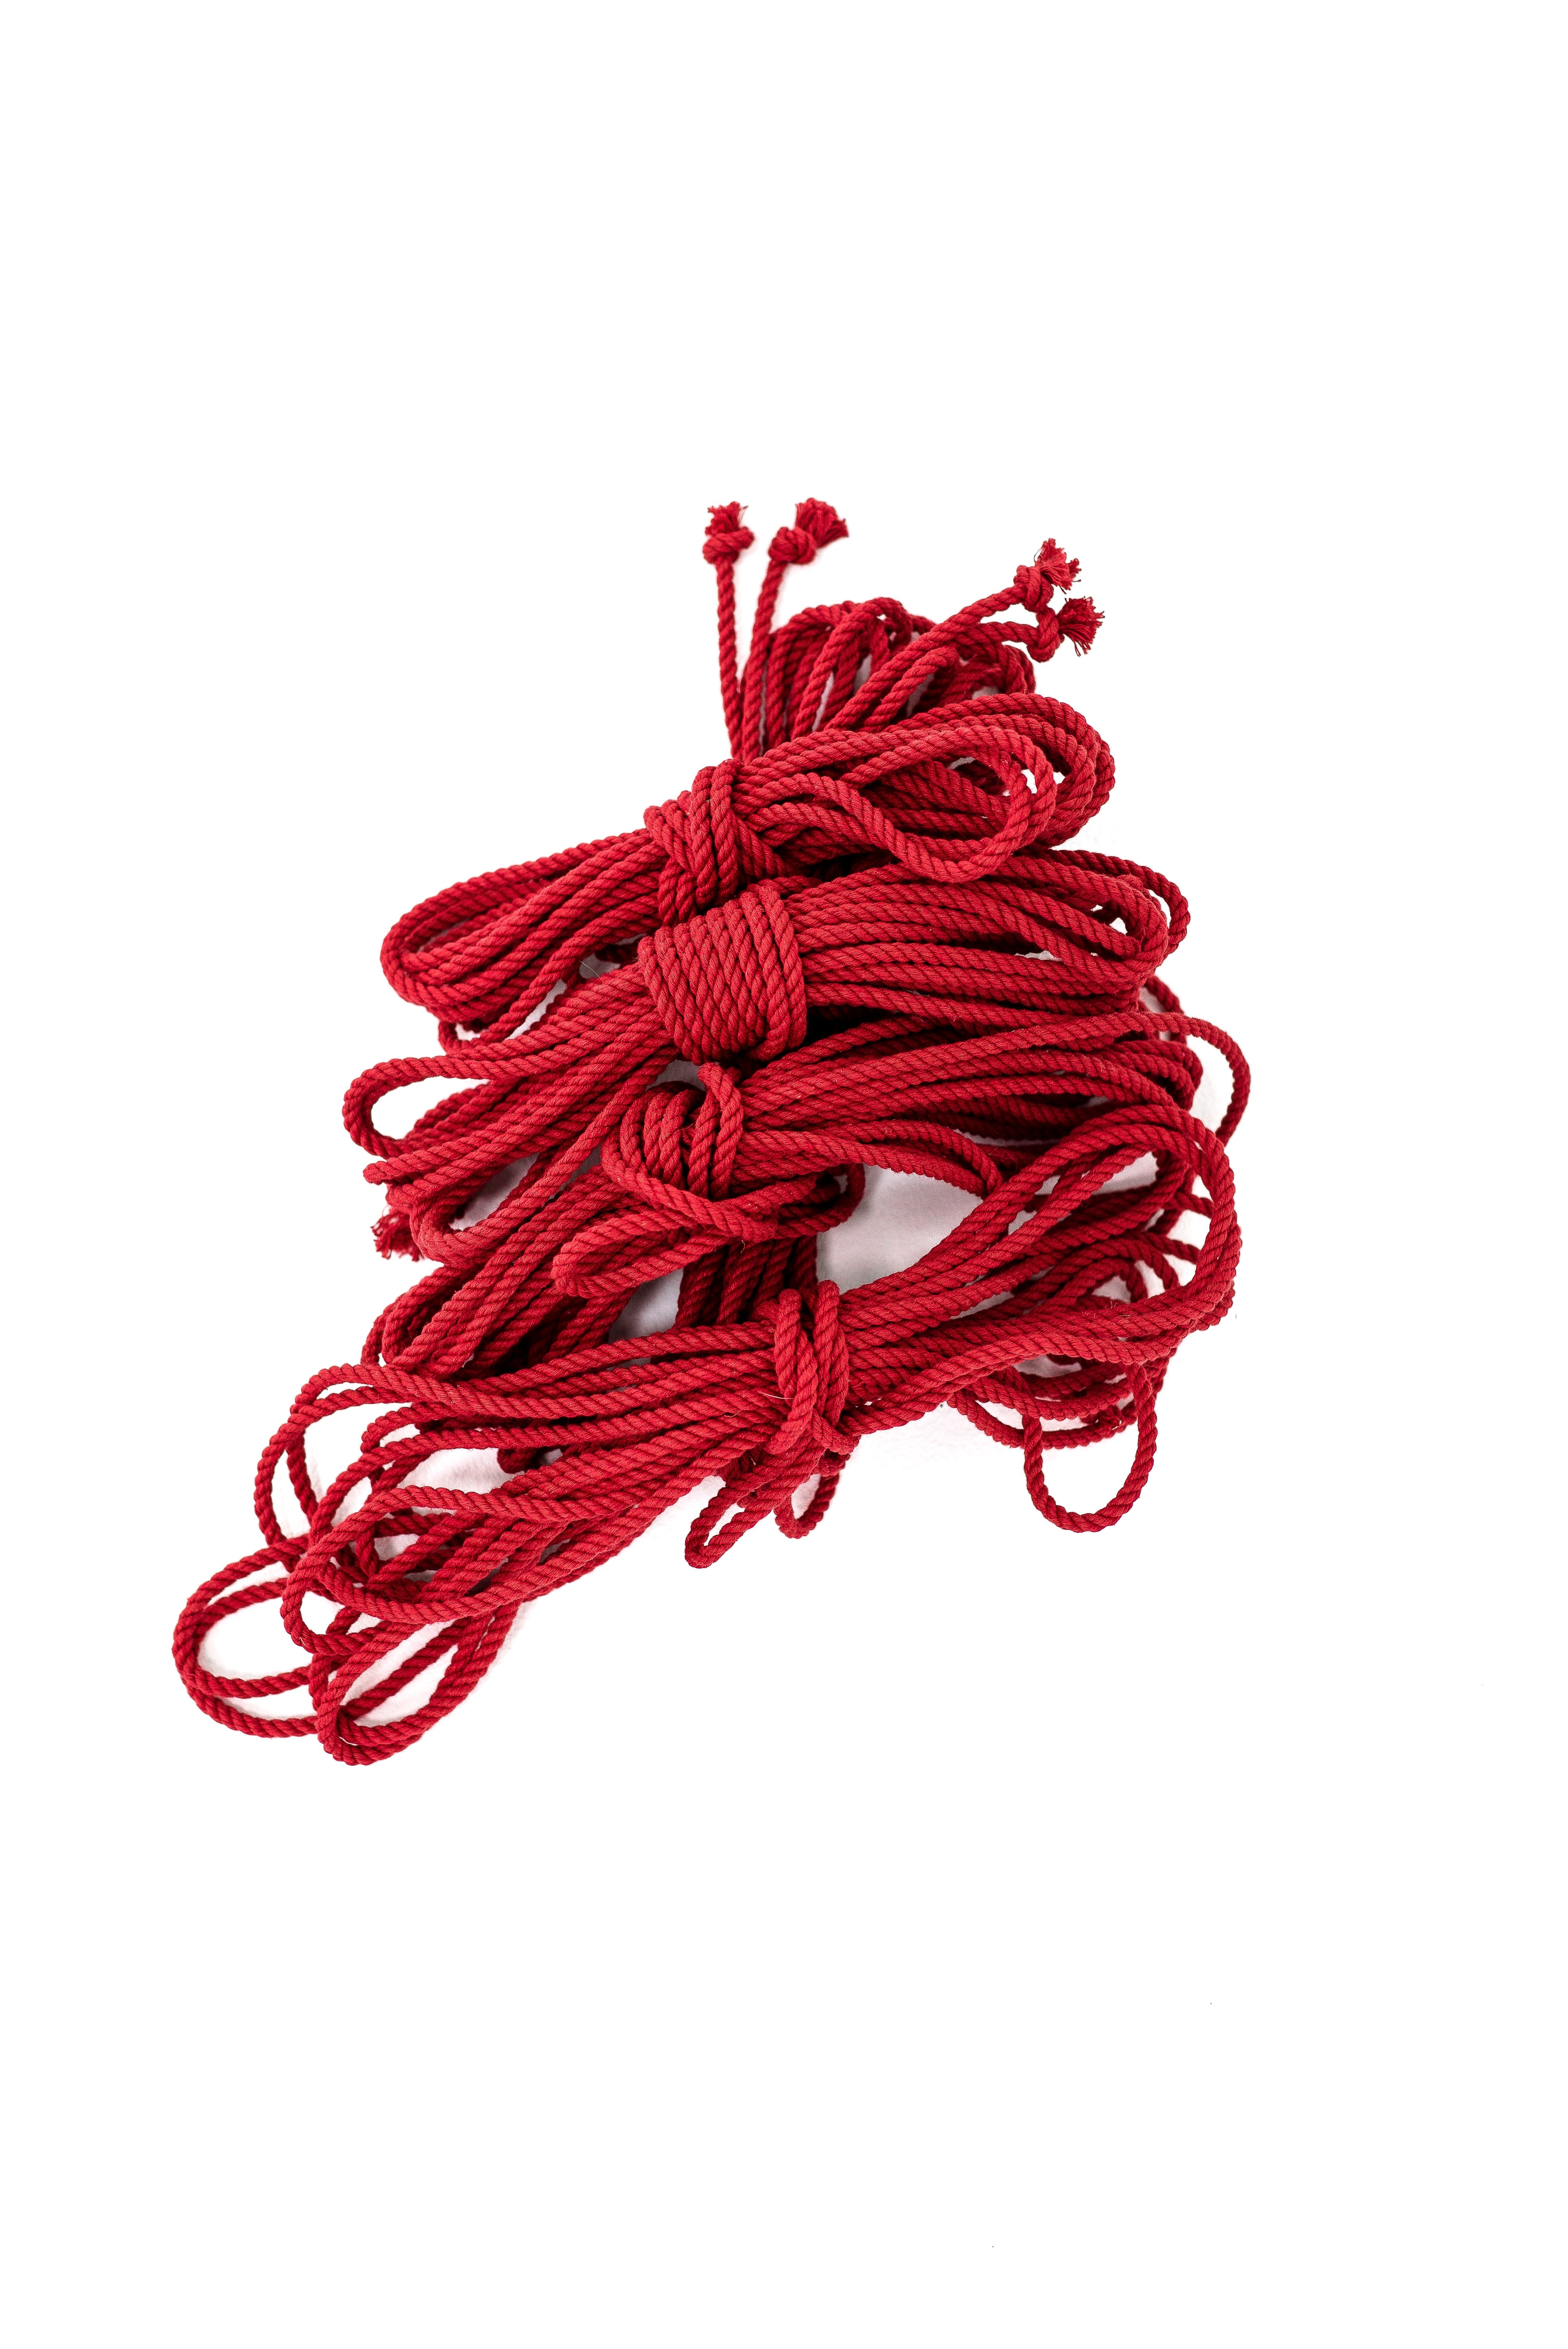 Shibari Rope Red